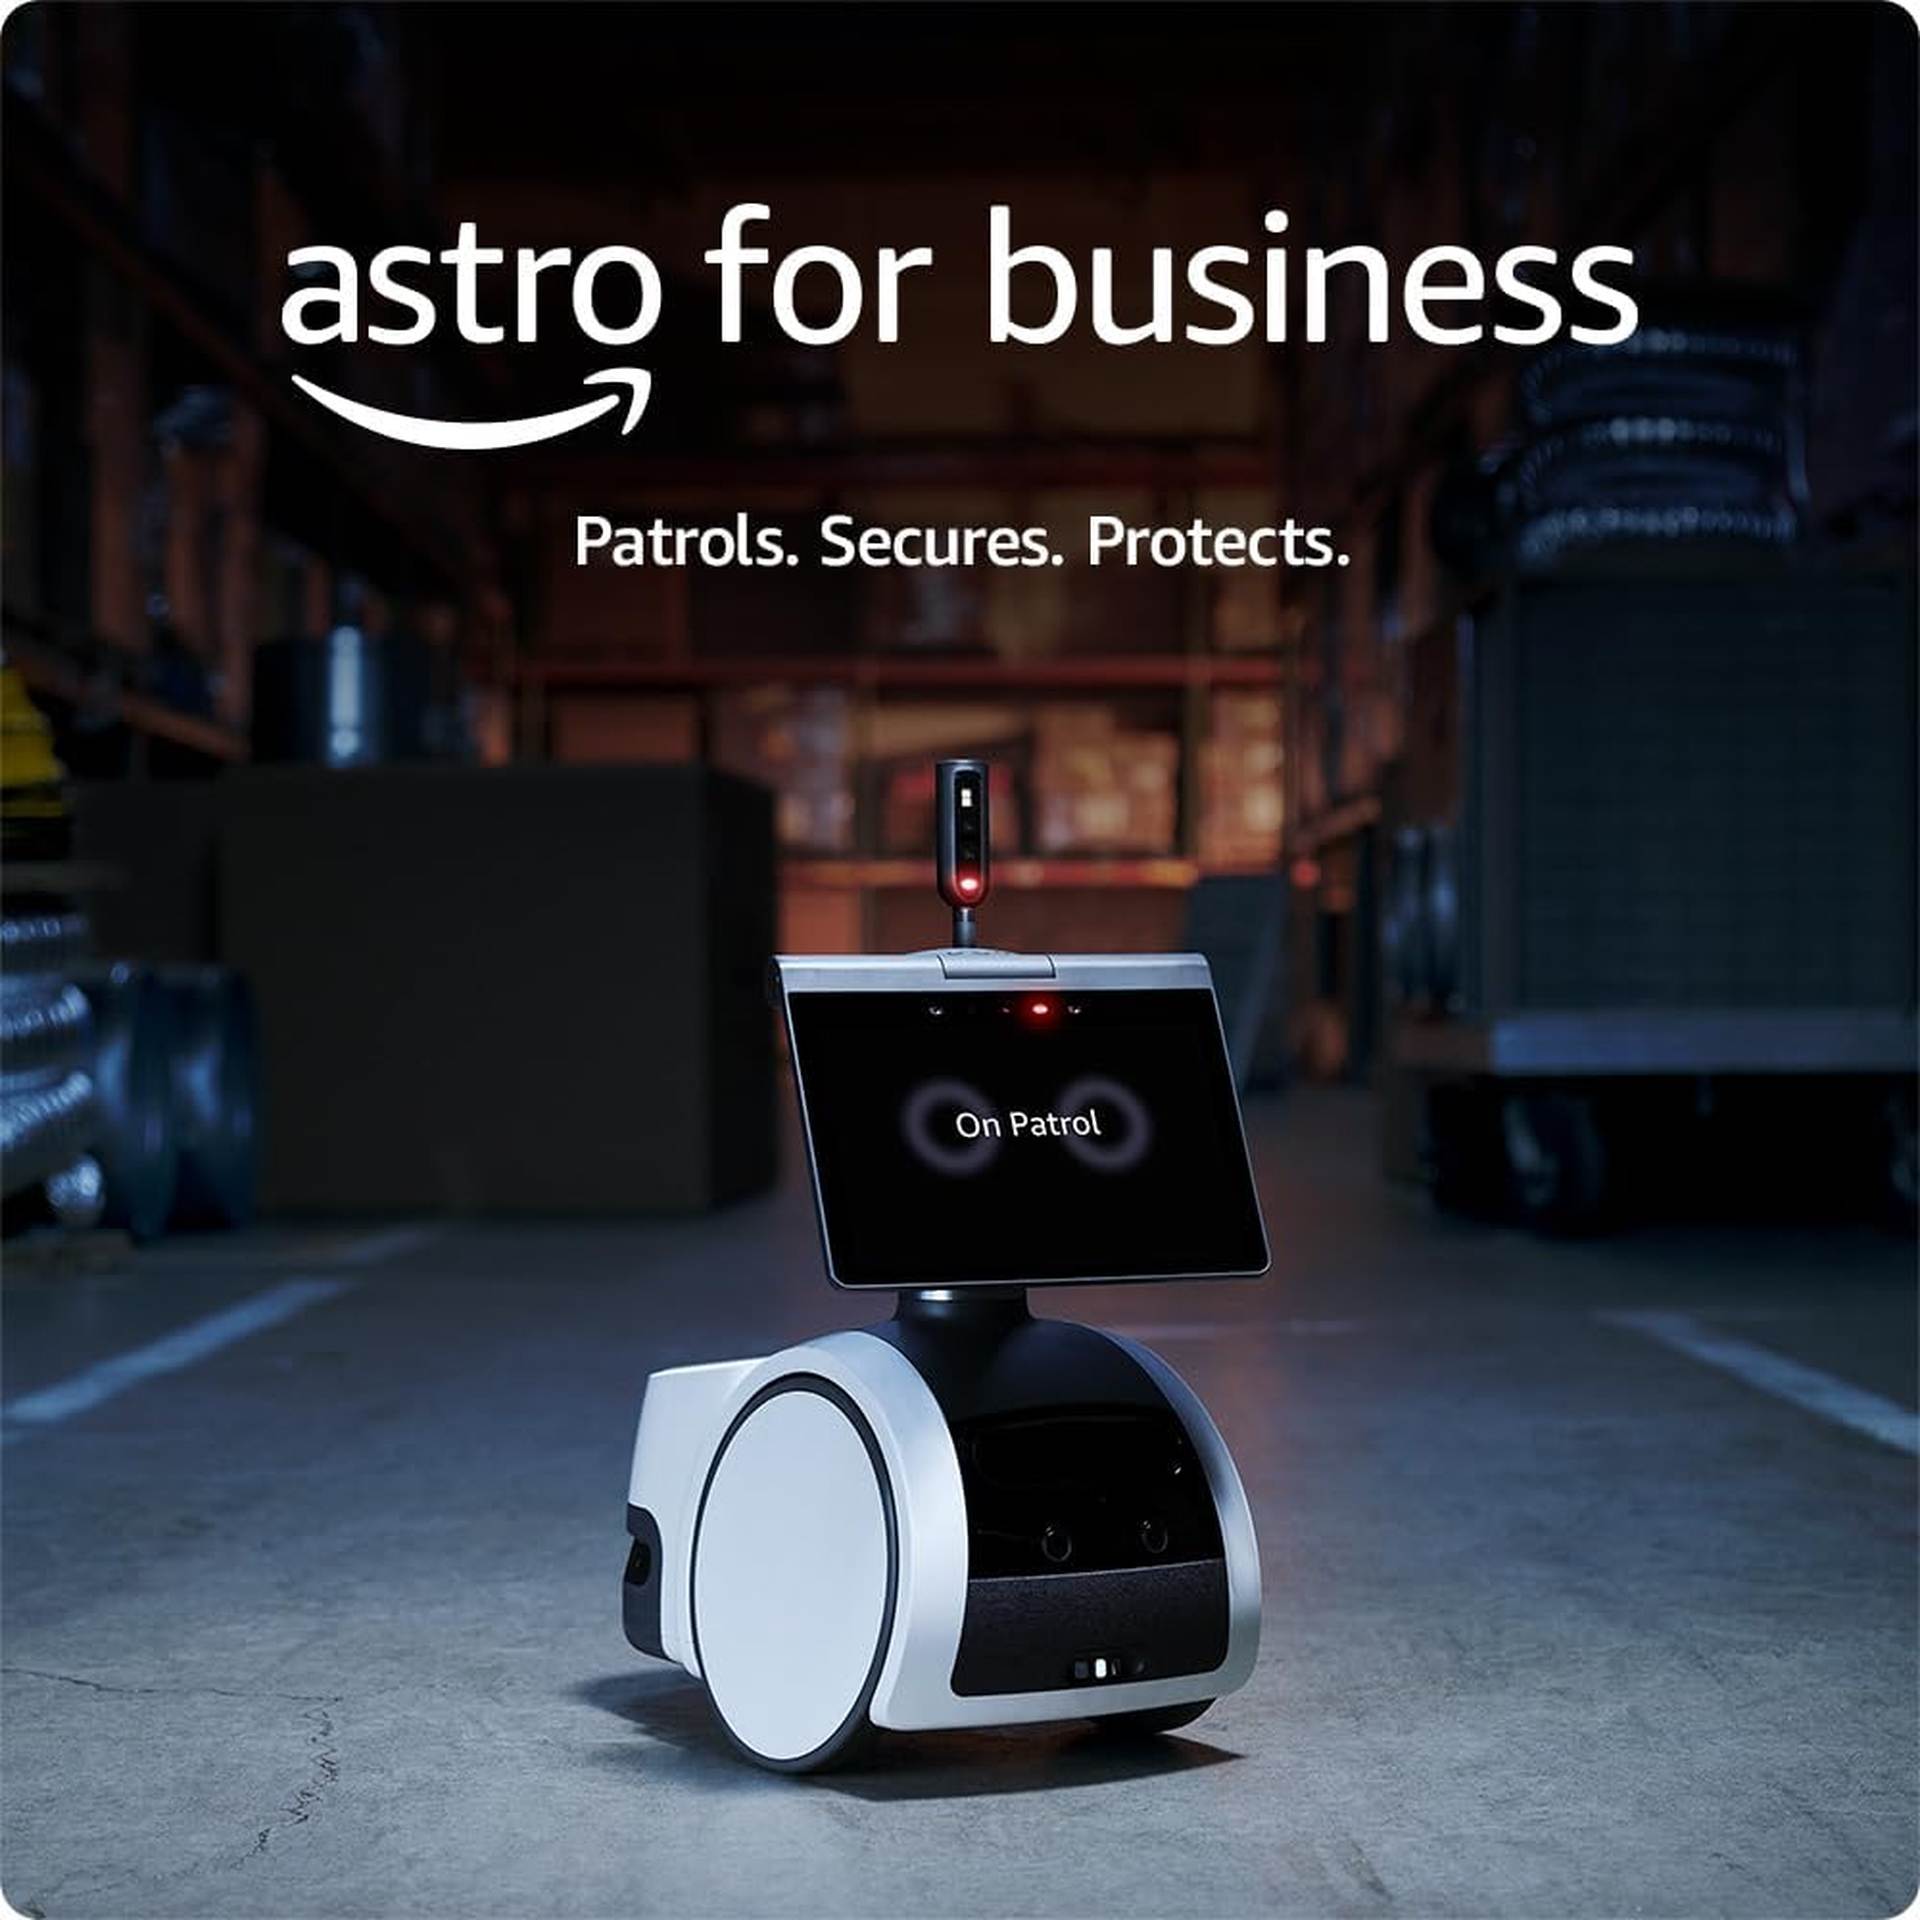 El robot Amazon Astro para empresas ha sido descontinuado 